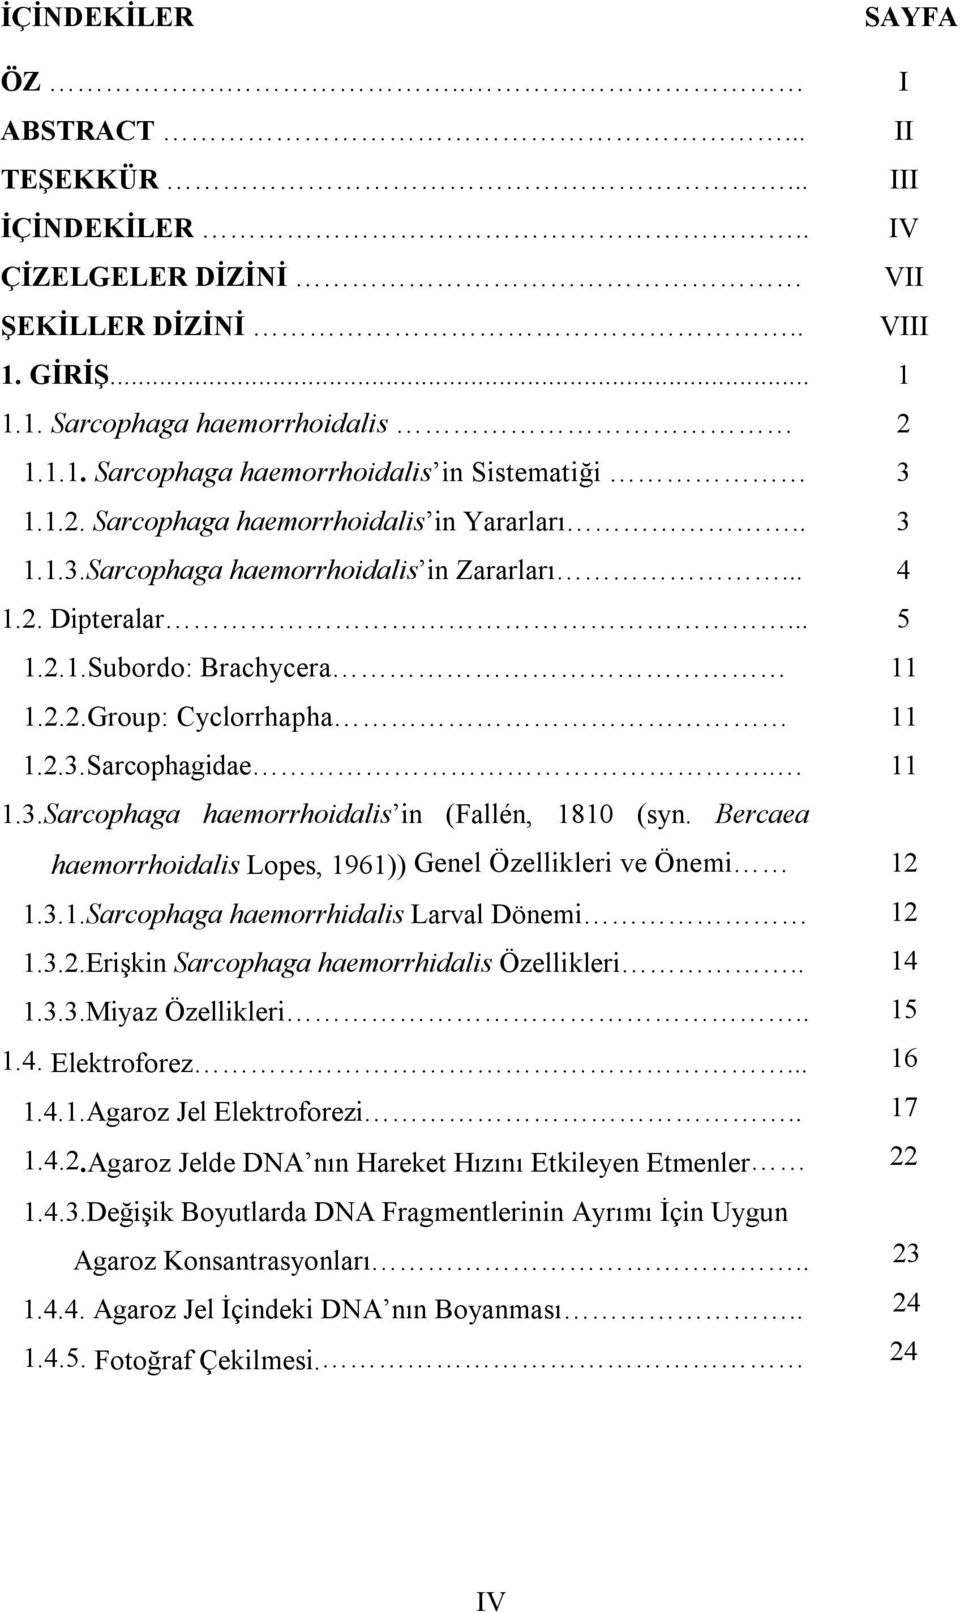 Bercaea haemorrhoidalis Lopes, 1961)) Genel Özellikleri ve Önemi 1.3.1.Sarcophaga haemorrhidalis Larval Dönemi 1.3.2.Erişkin Sarcophaga haemorrhidalis Özellikleri.. 1.3.3.Miyaz Özellikleri.. 1.4.